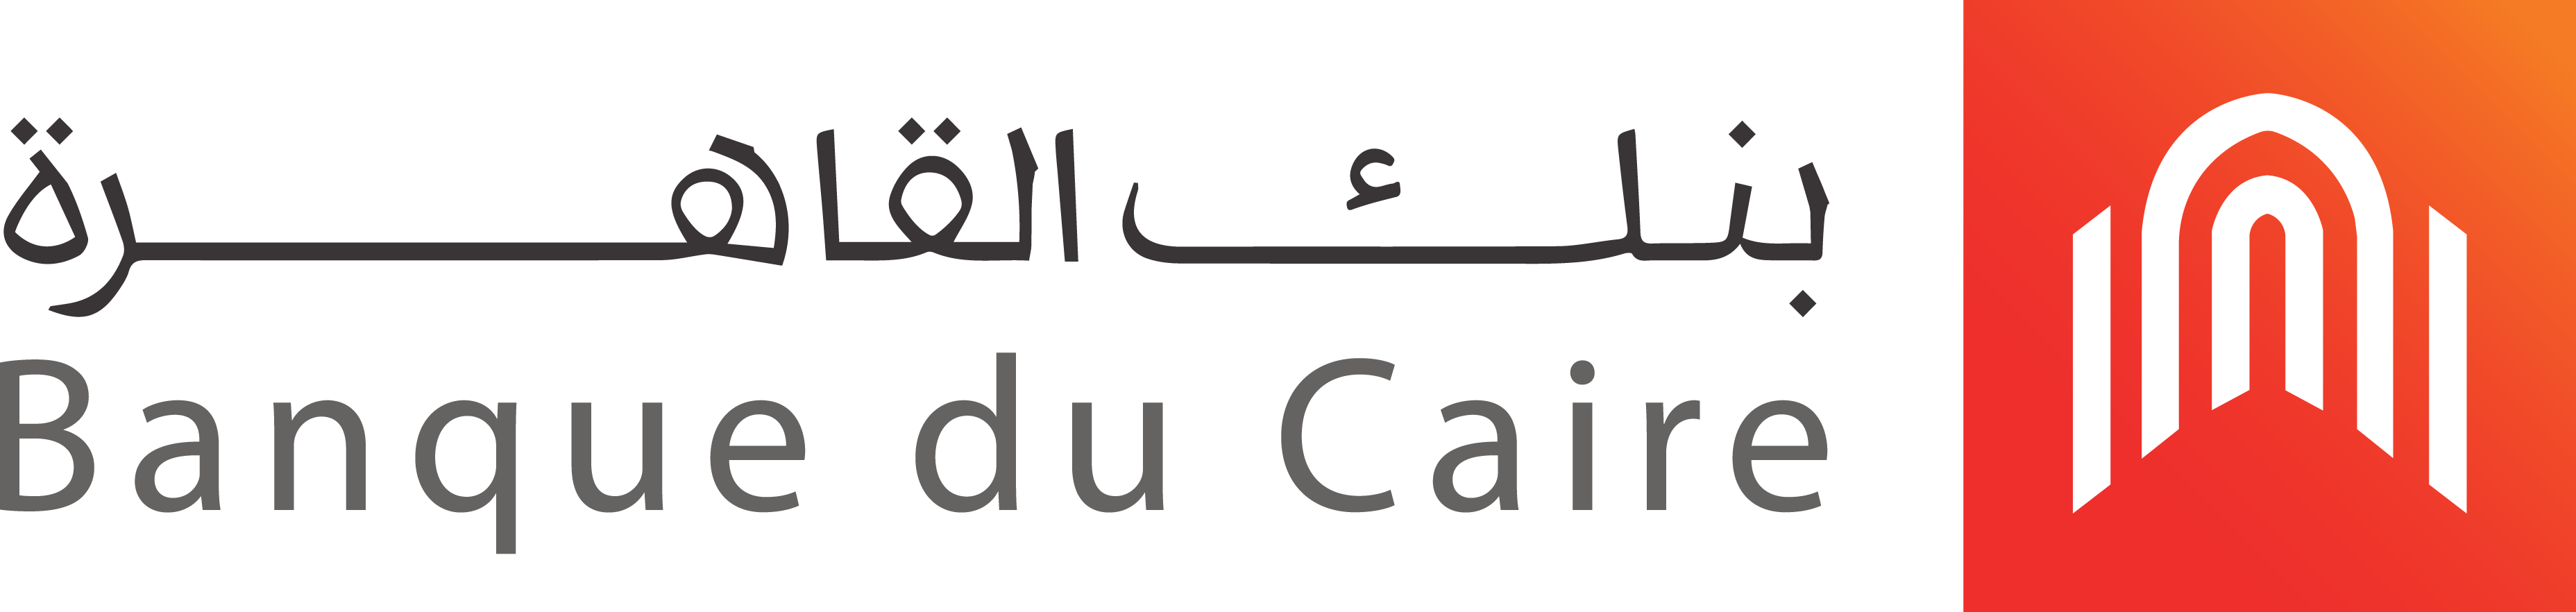 28 Banque de Caire